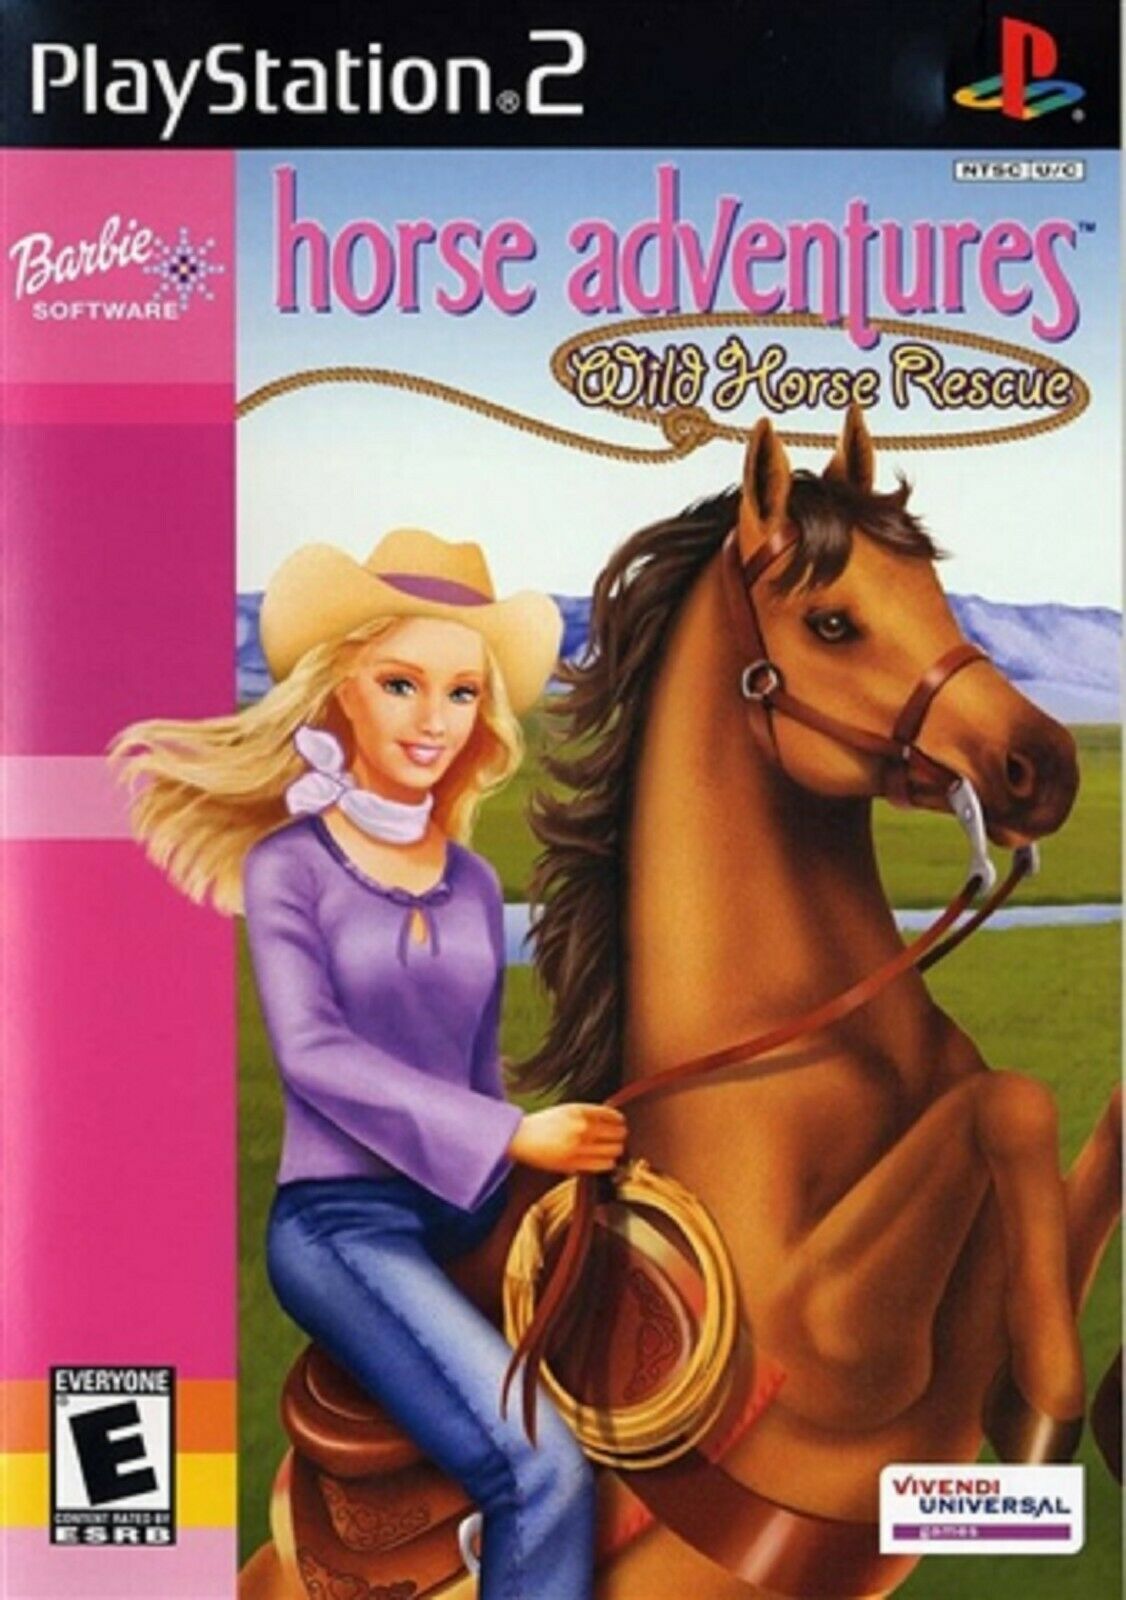 Joc PS2 Barbie Horse Adventure Wild Horse Rescue